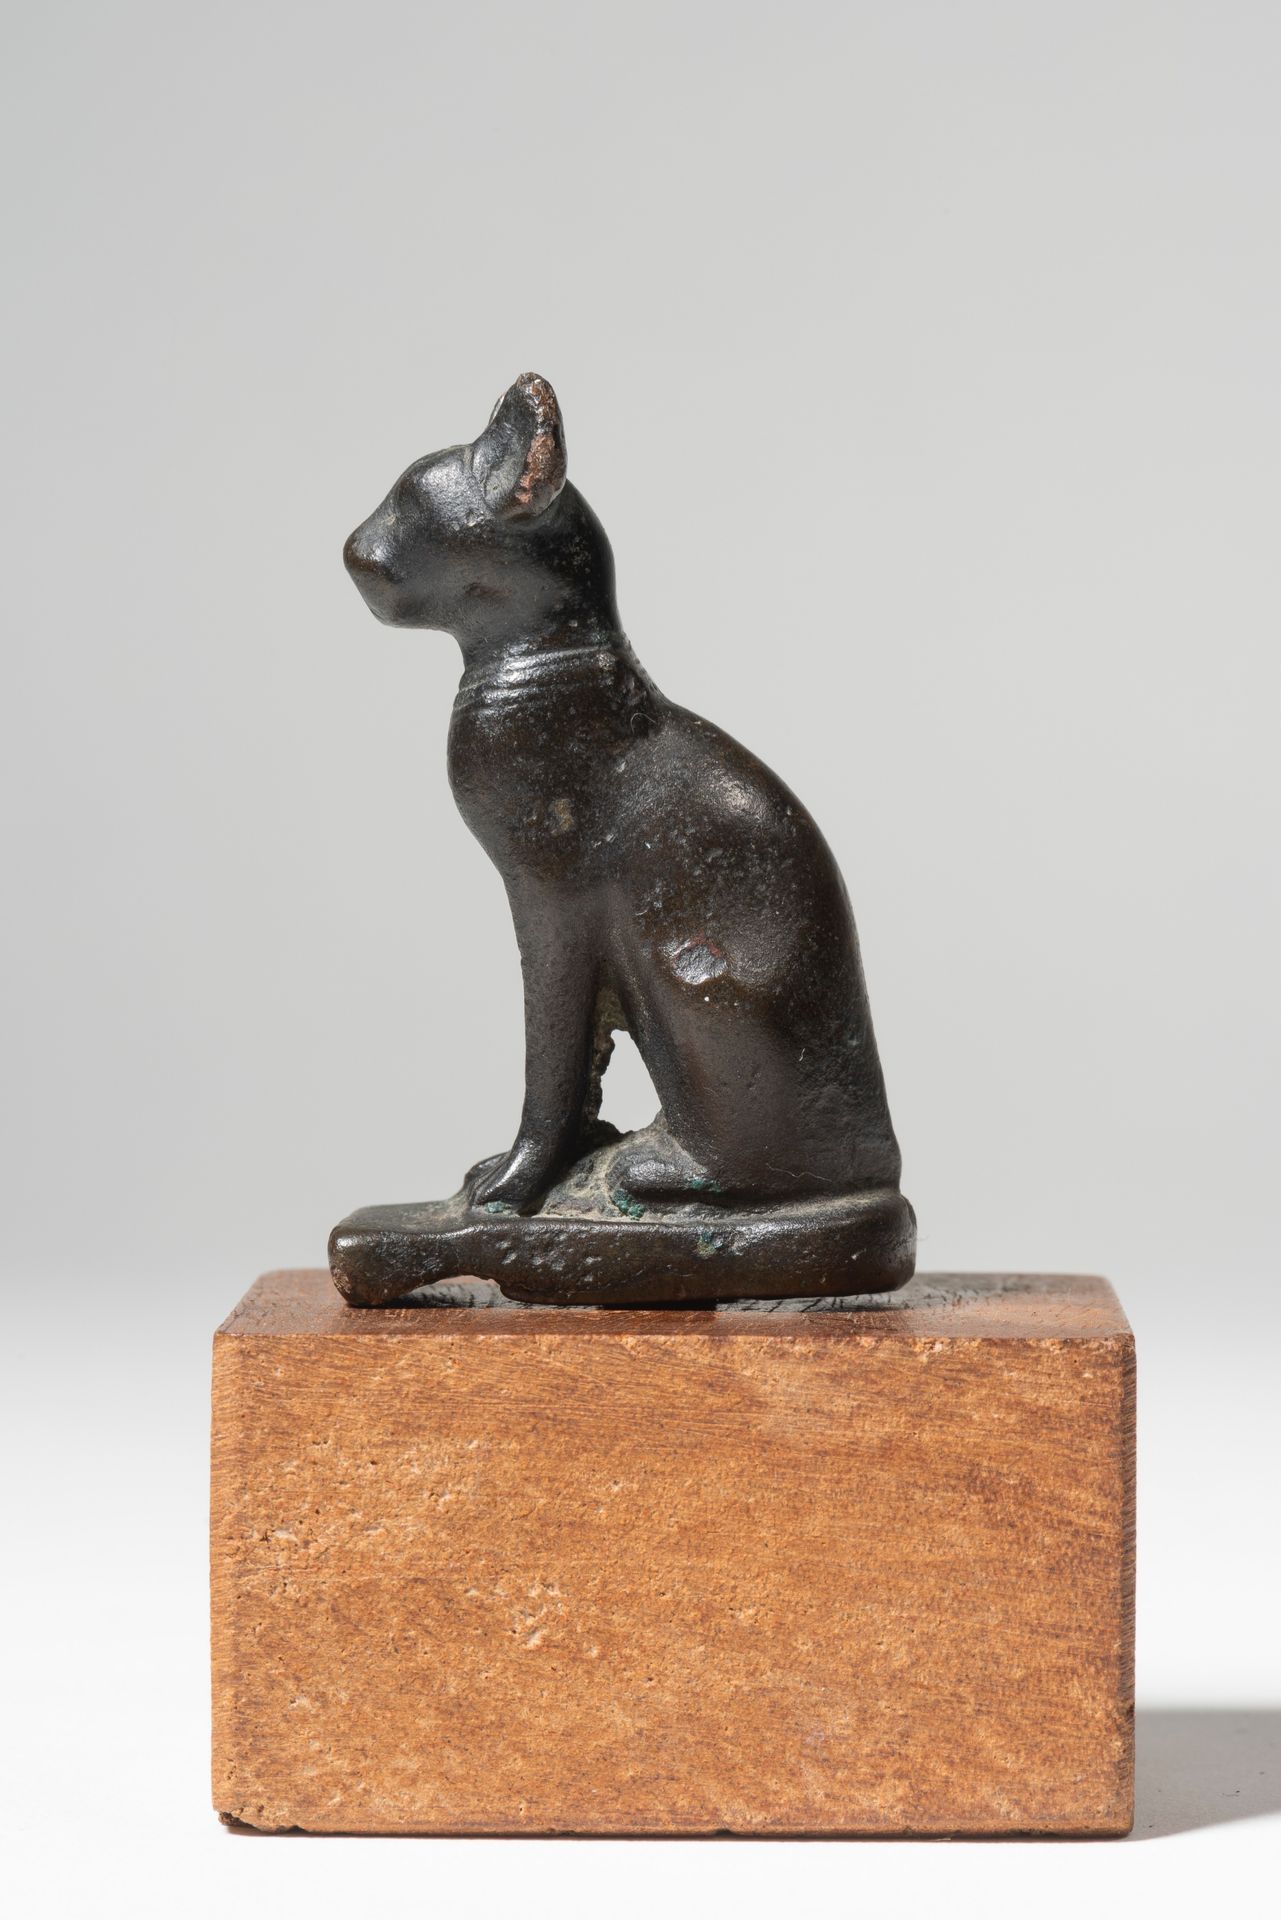 Statuette représentant la chatte Bastet assise 
EGIPTO, PERIODO TARDÍO





Esta&hellip;